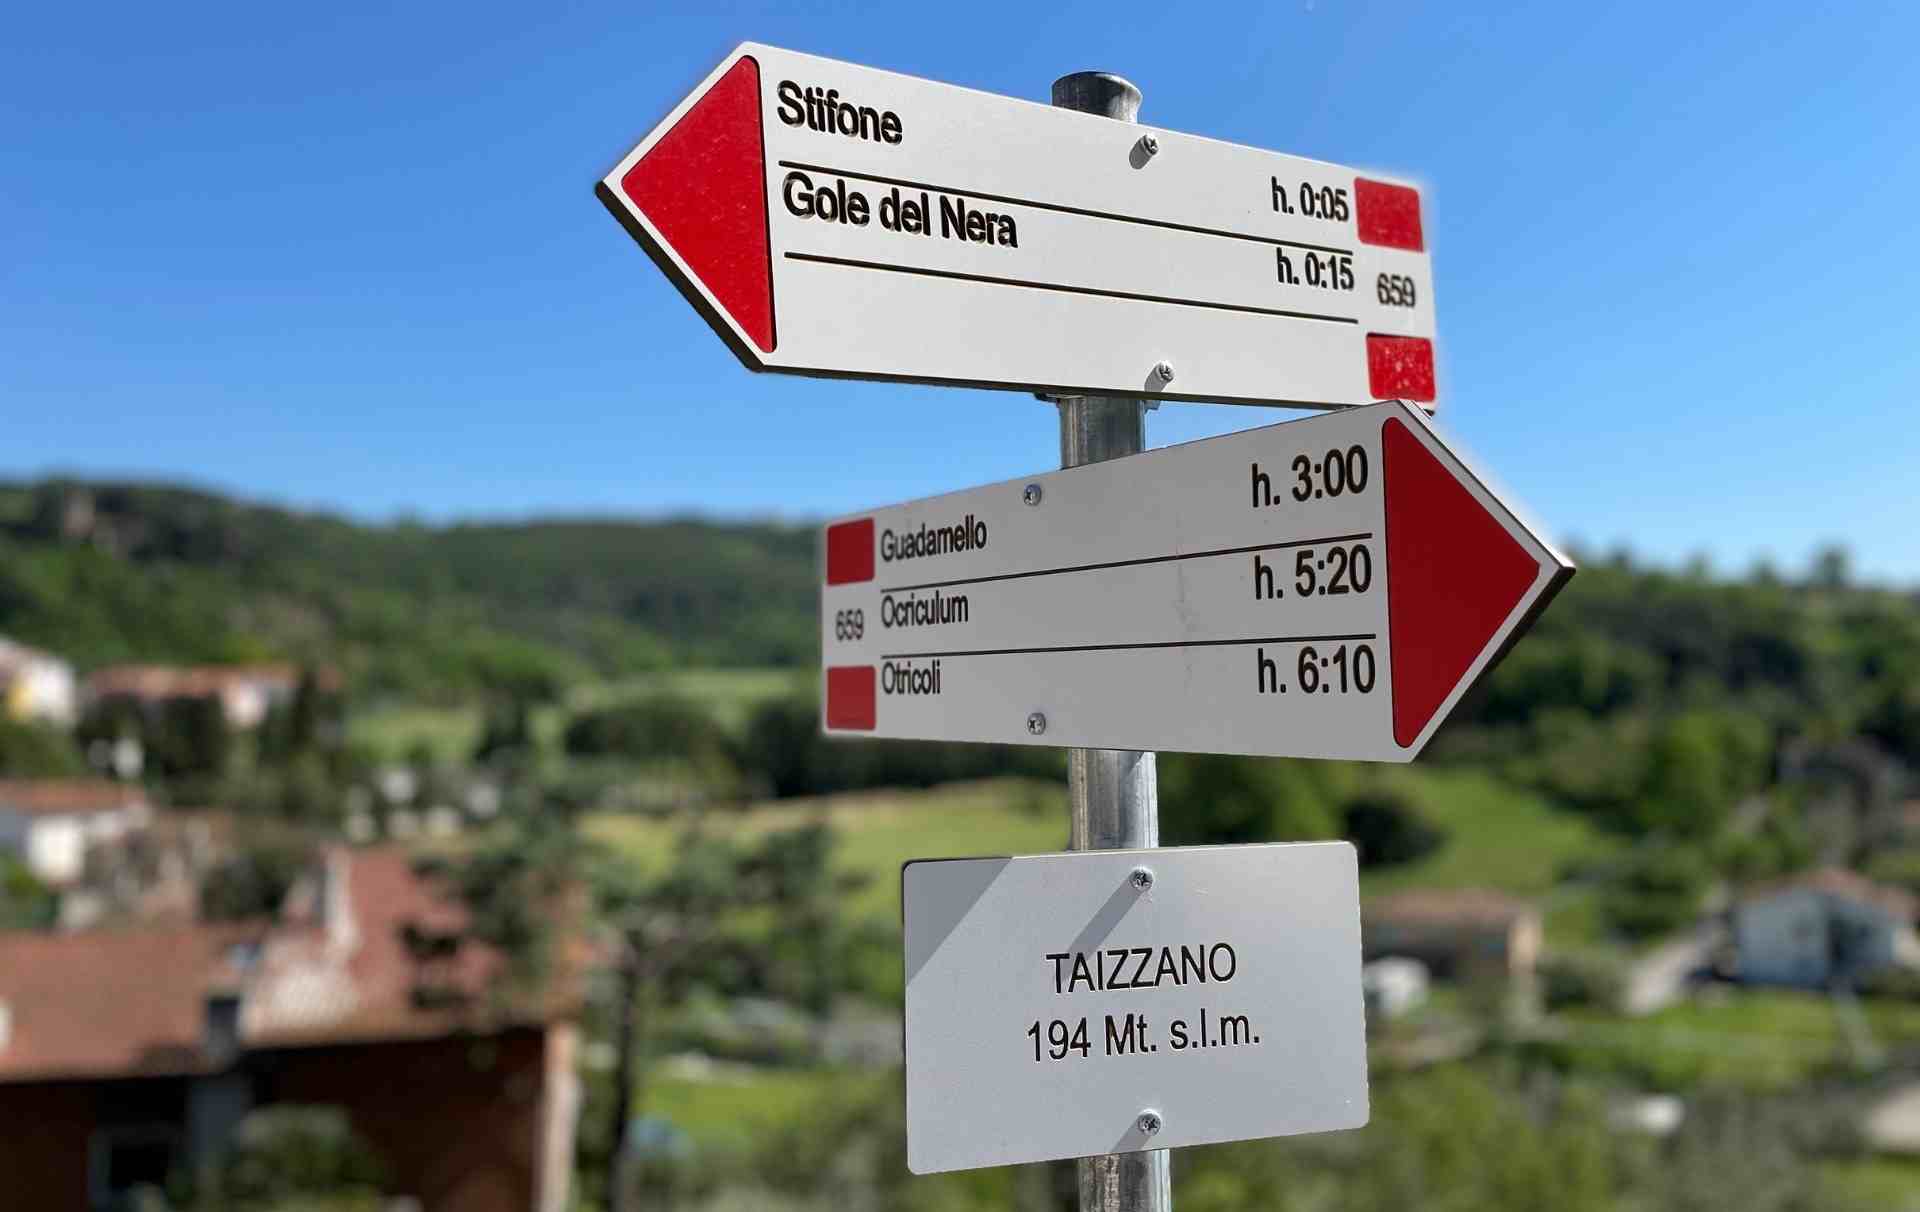 Insegne degli sentieri CAI a Taizzano con indicazioni delle distanze da Stifone, Gole del Nera, Guadamello e Otricoli